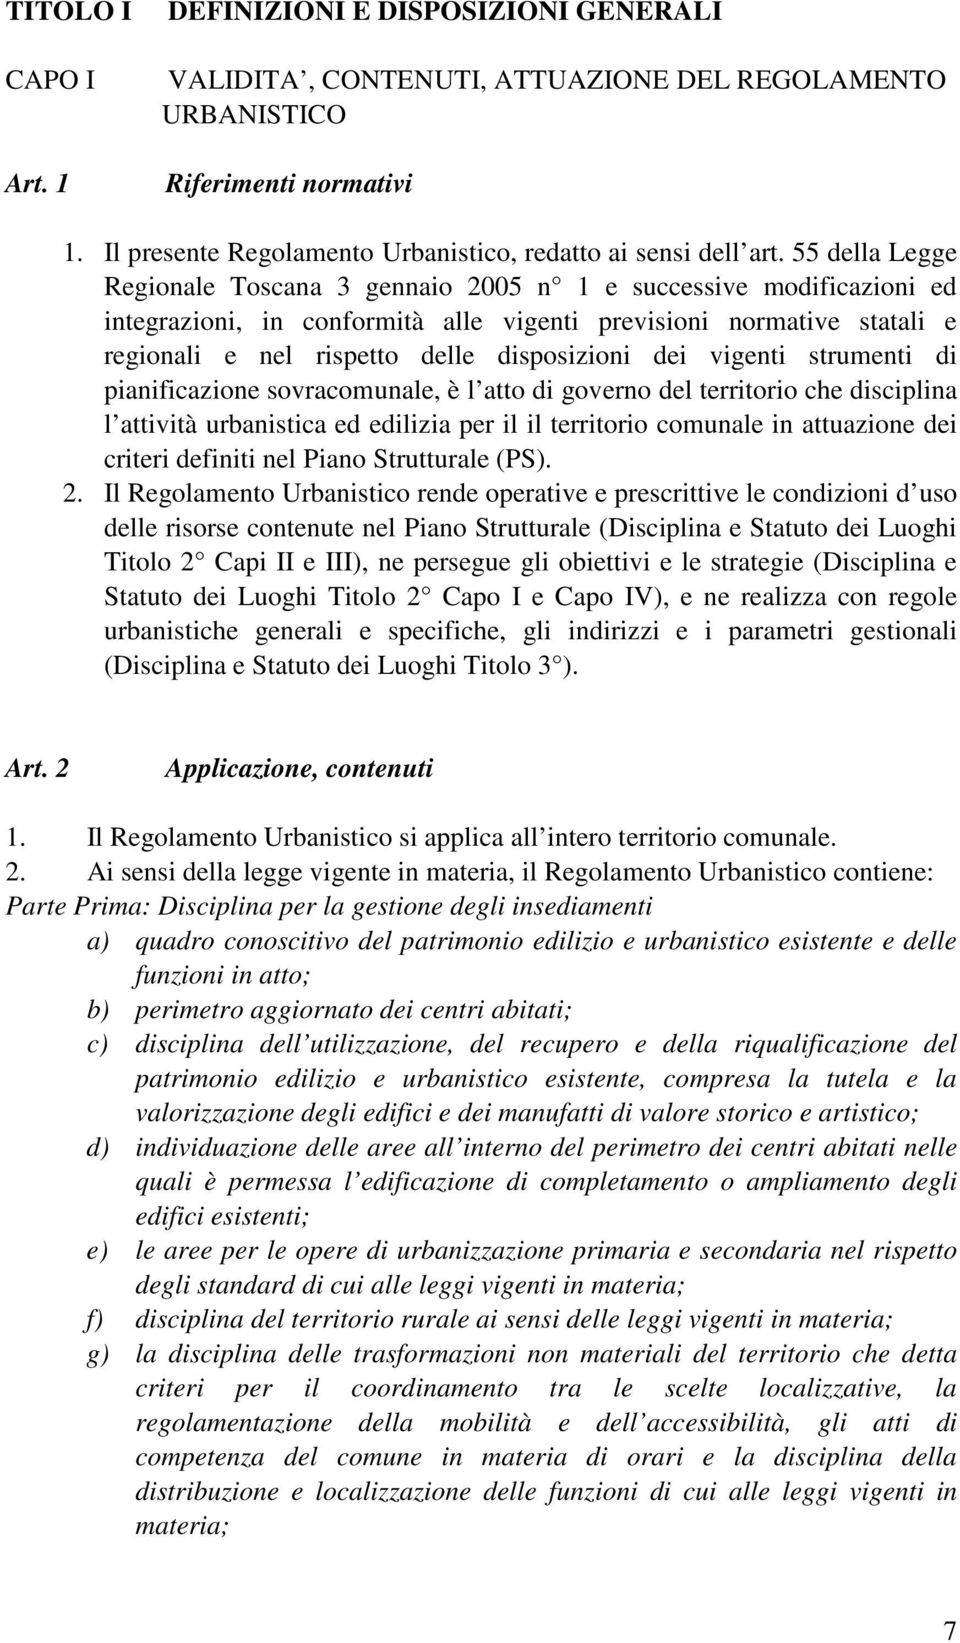 55 della Legge Regionale Toscana 3 gennaio 2005 n 1 e successive modificazioni ed integrazioni, in conformità alle vigenti previsioni normative statali e regionali e nel rispetto delle disposizioni